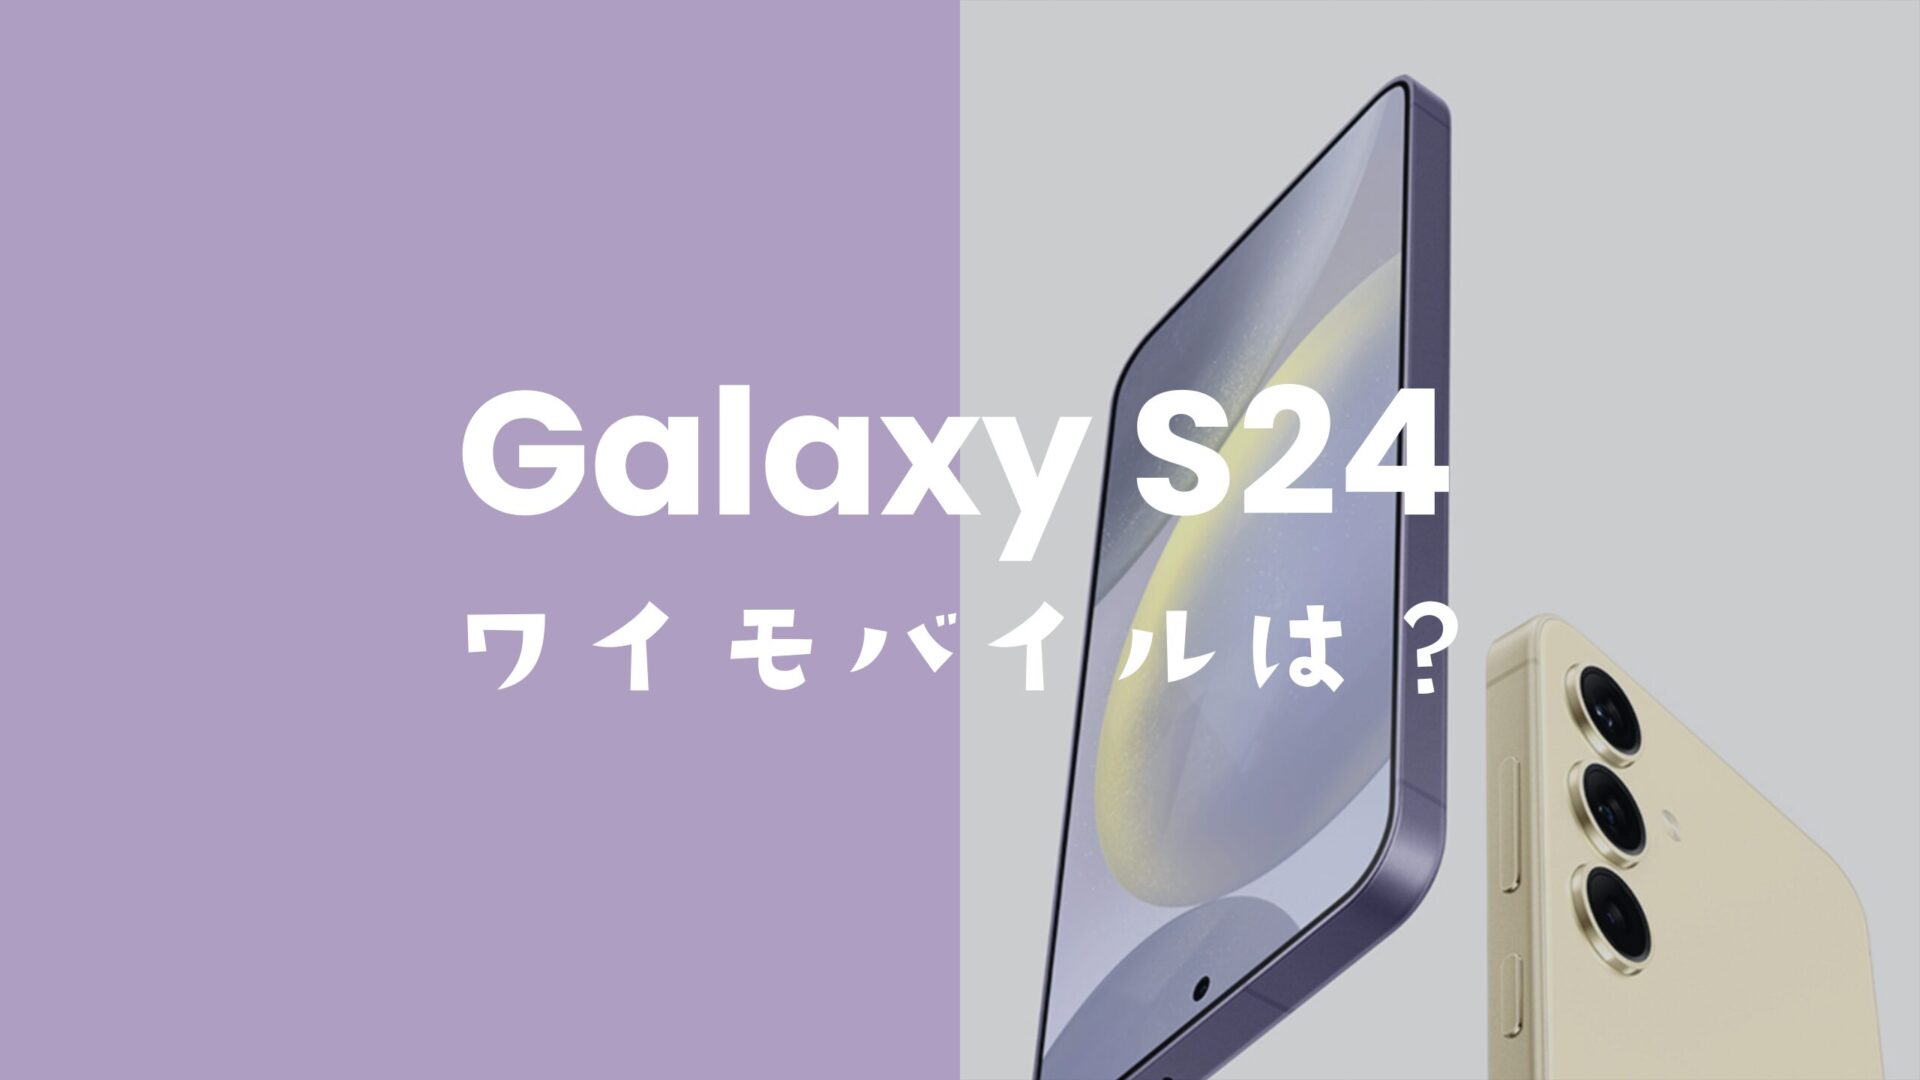 Galaxy(ギャラクシー)S24はワイモバイルで使える？対応機種なのか解説。のサムネイル画像